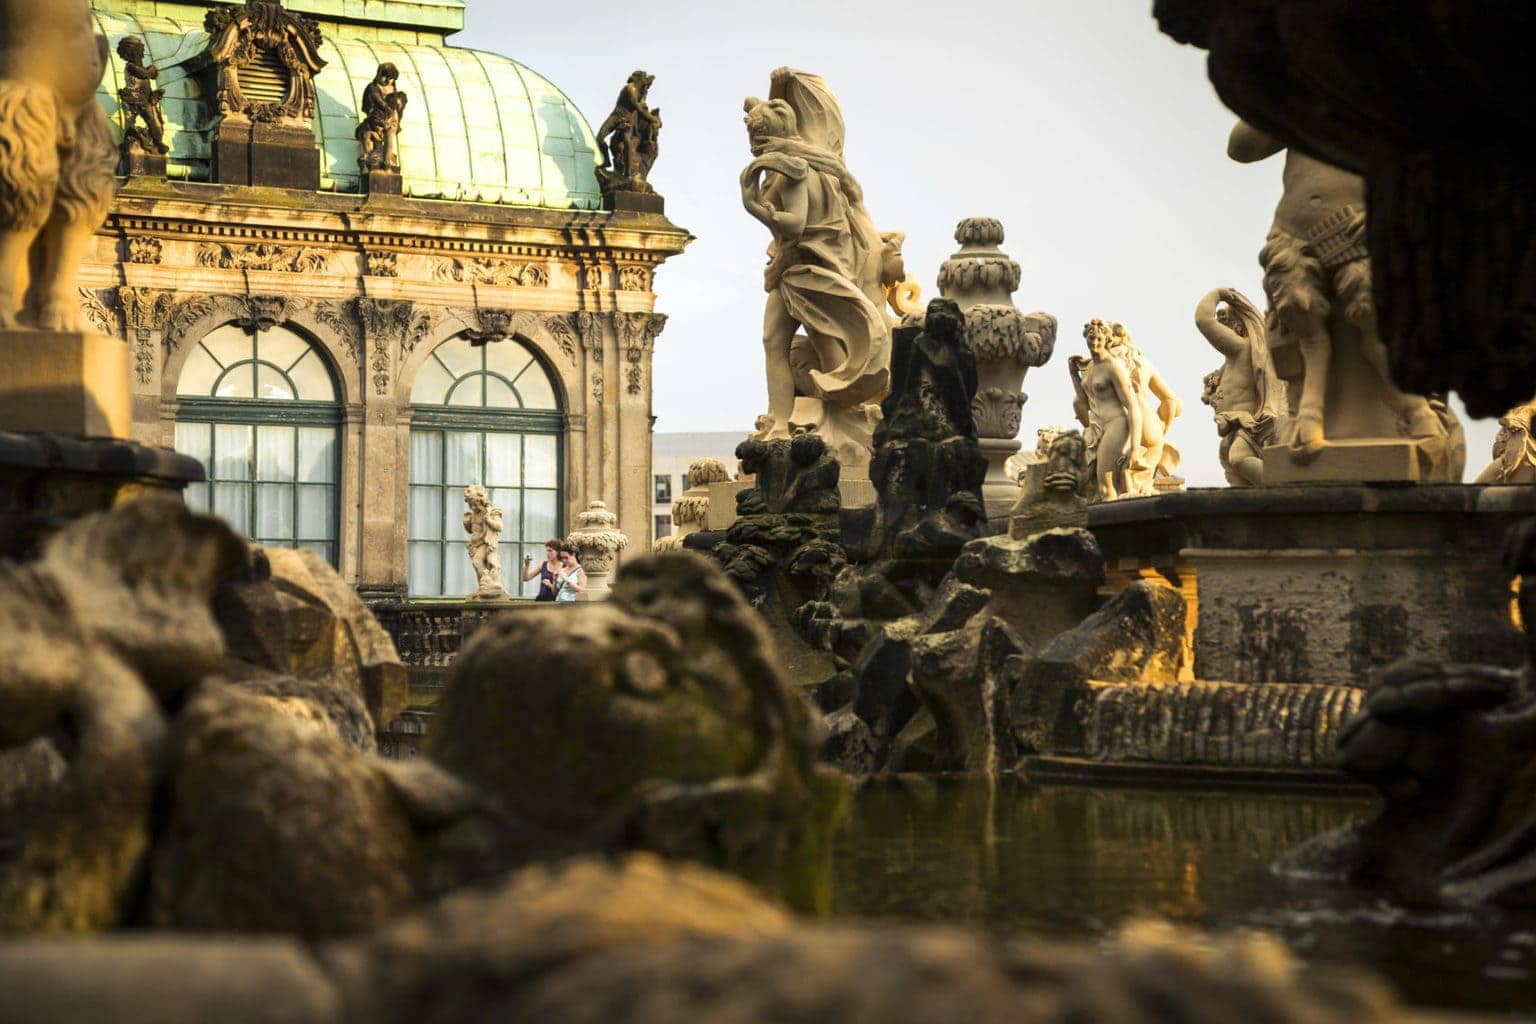 De Zwinger in Dresden is een van de belangrijkste musea van het land